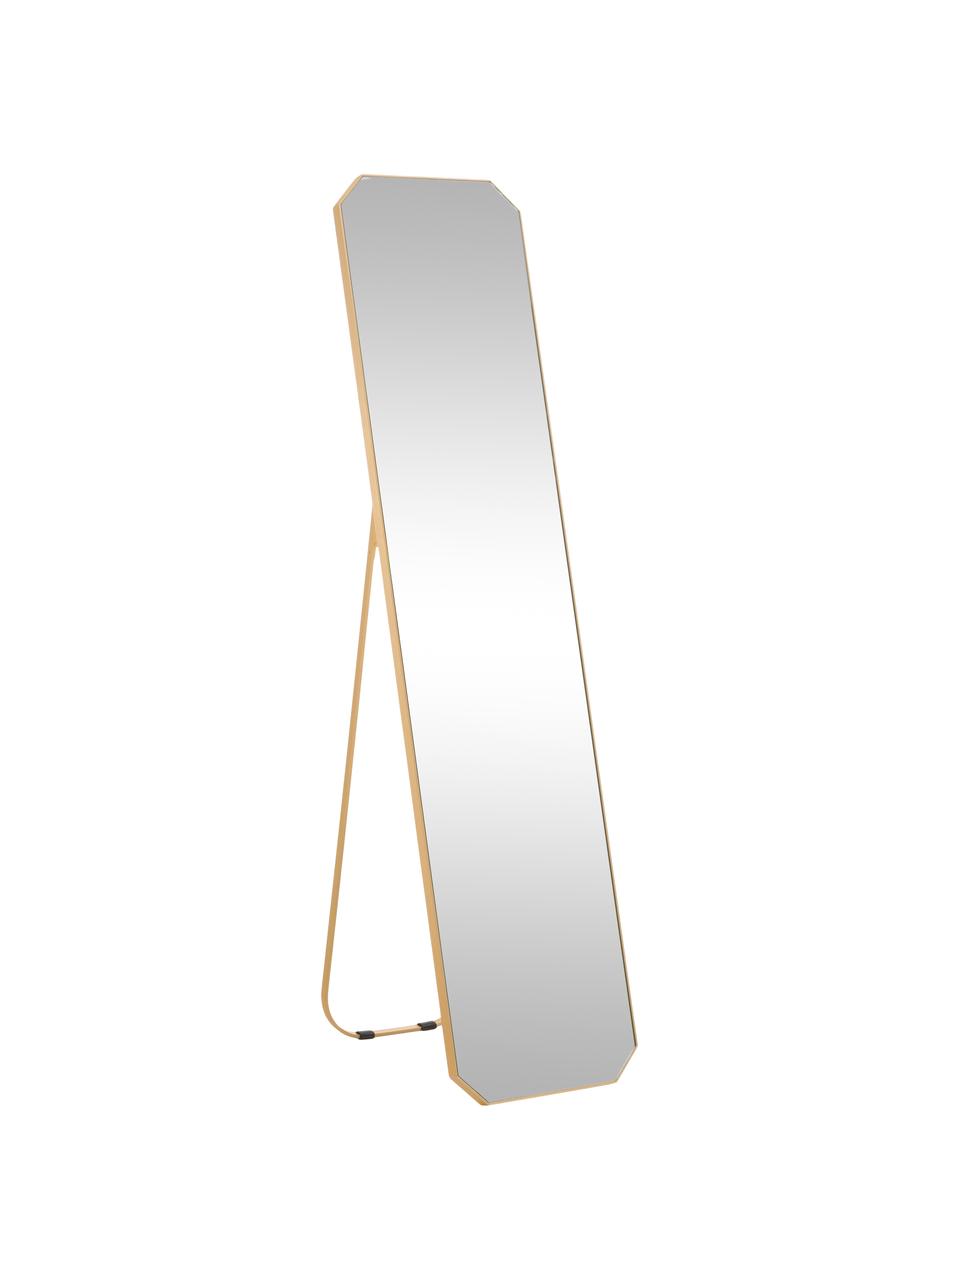 Miroir sur pied avec cadre en aluminium Bavado, Couleur laitonnée, larg. 41 x haut. 175 cm